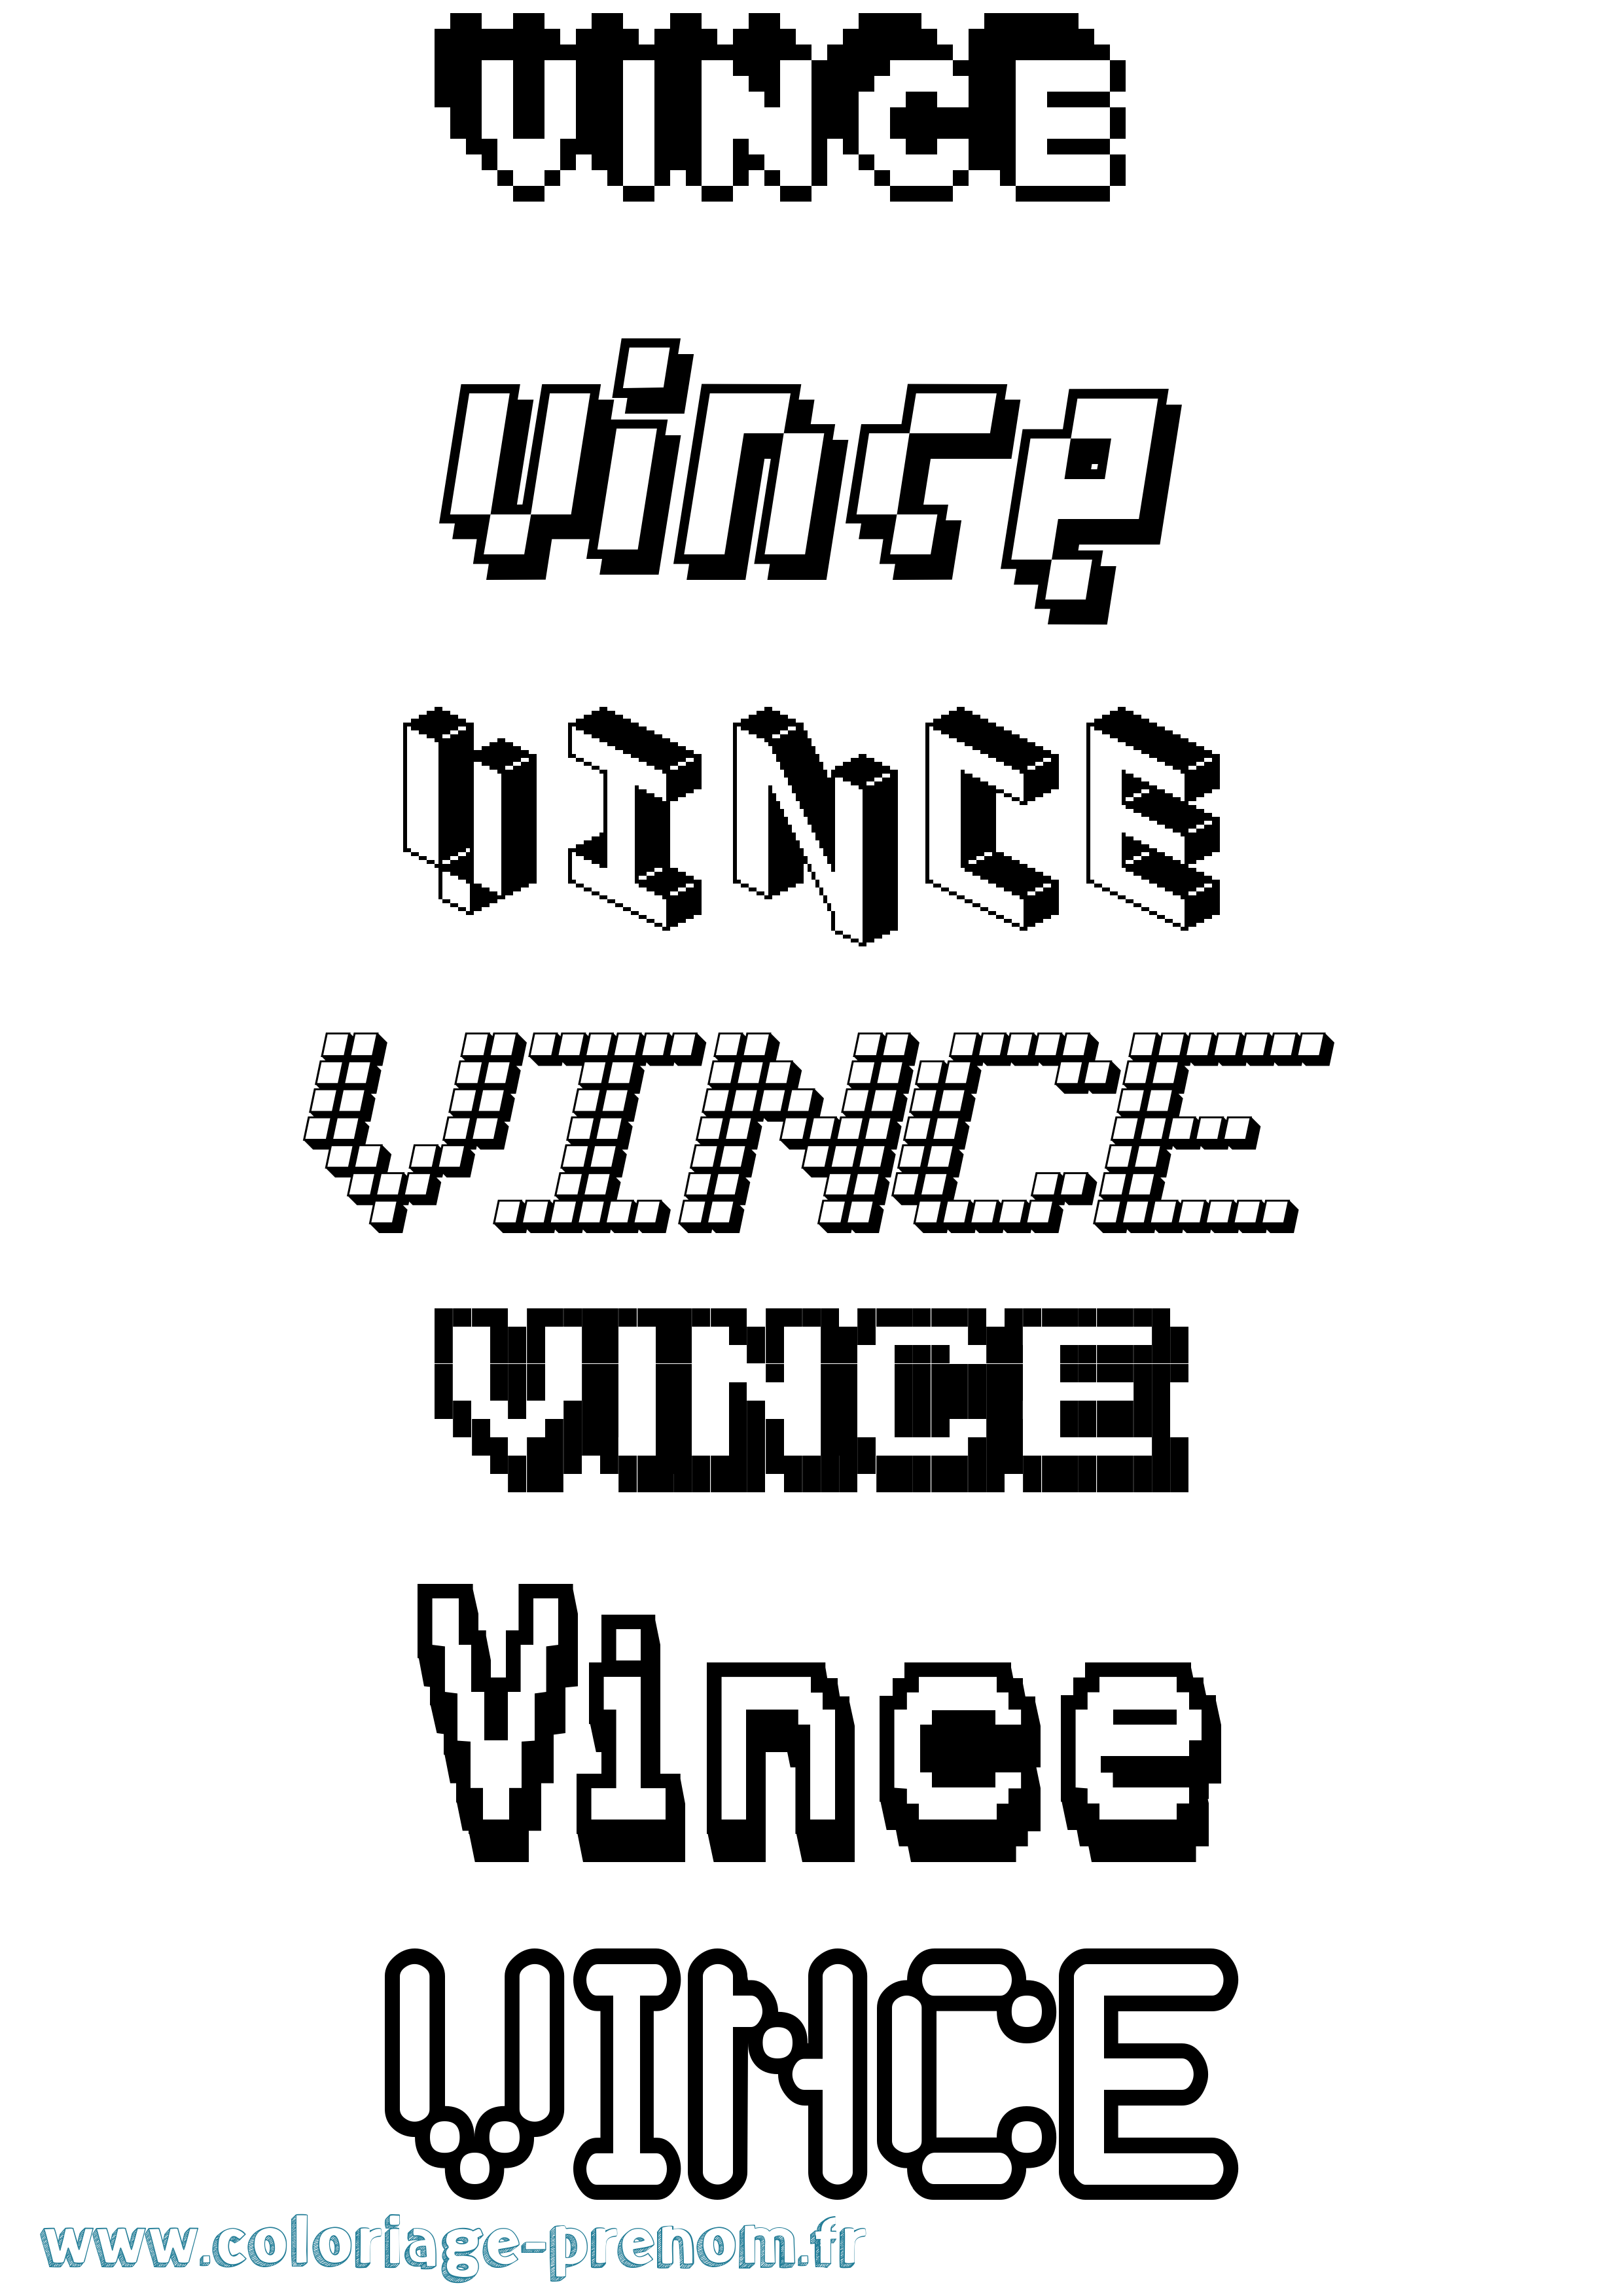 Coloriage prénom Vince Pixel